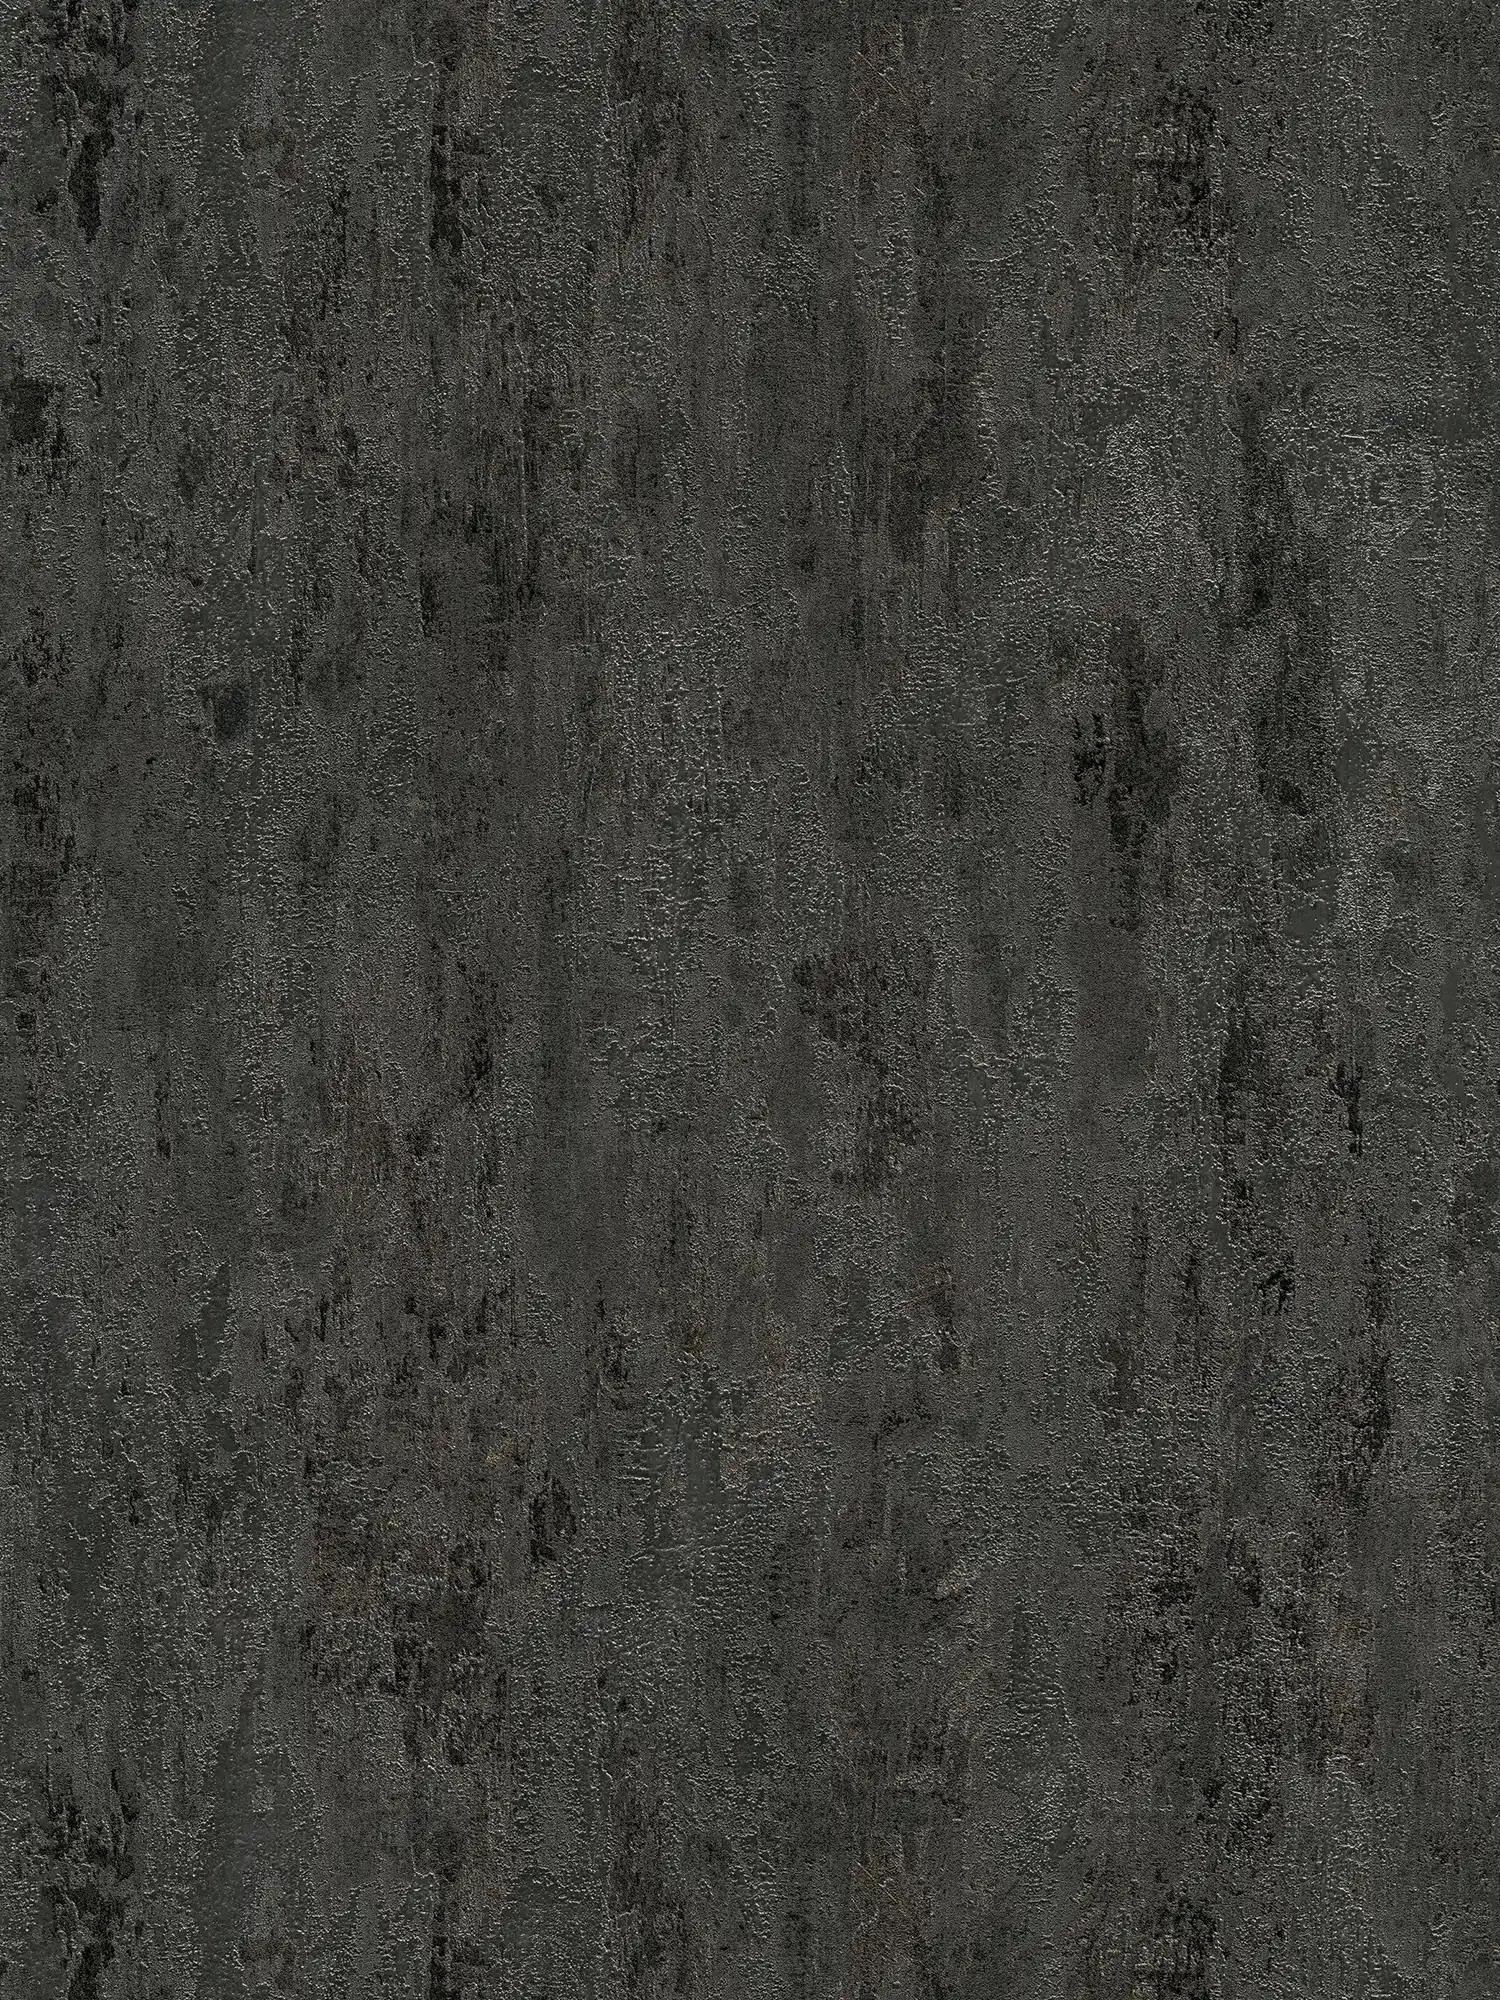 Carta da parati rustica testurizzata effetto metallo antracite - nero, argento, grigio
